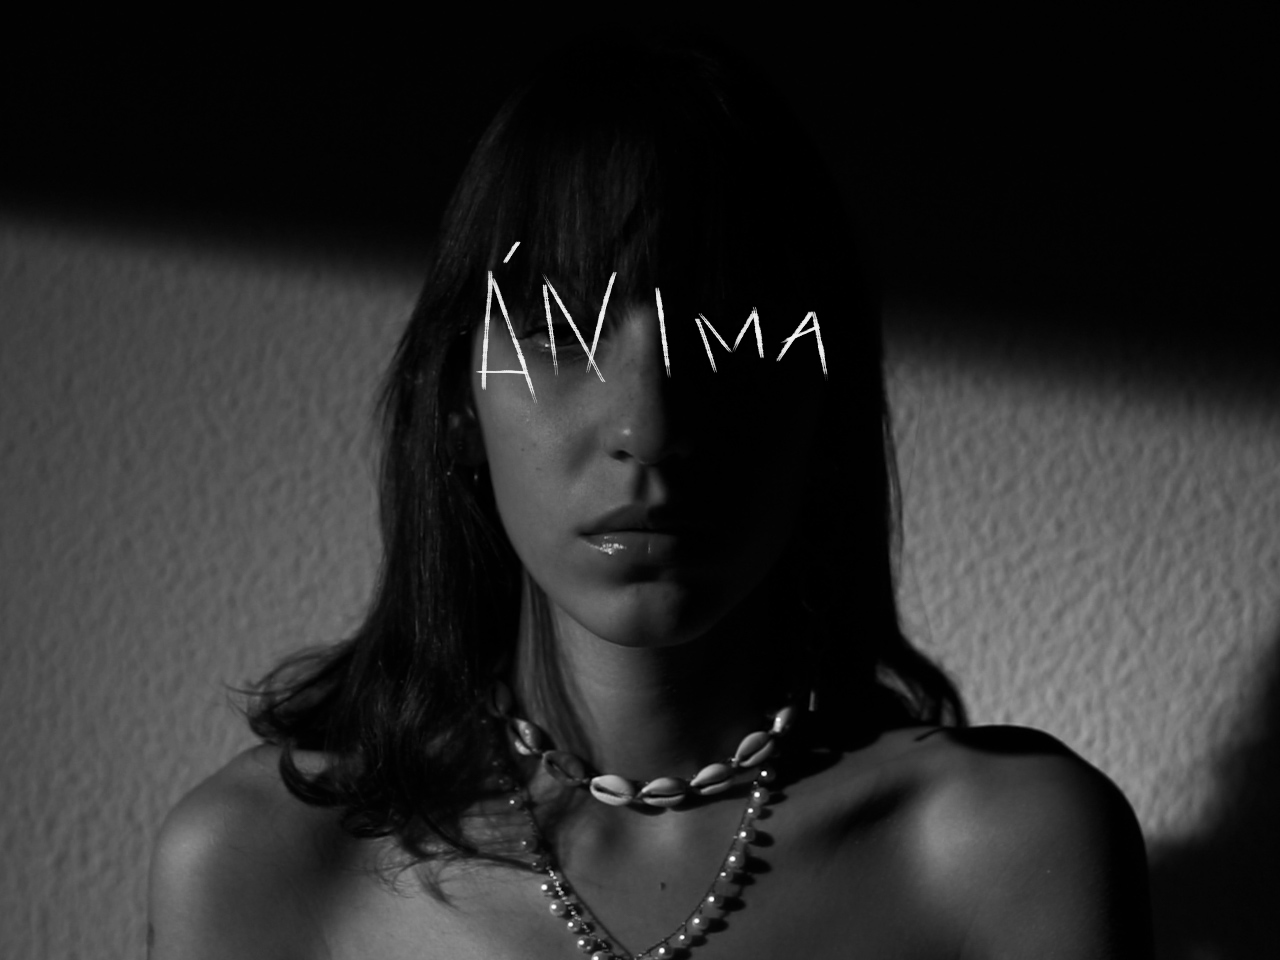 Escritores de Salem habla sobre la pérdida en su nuevo sencillo ‘Ánima’